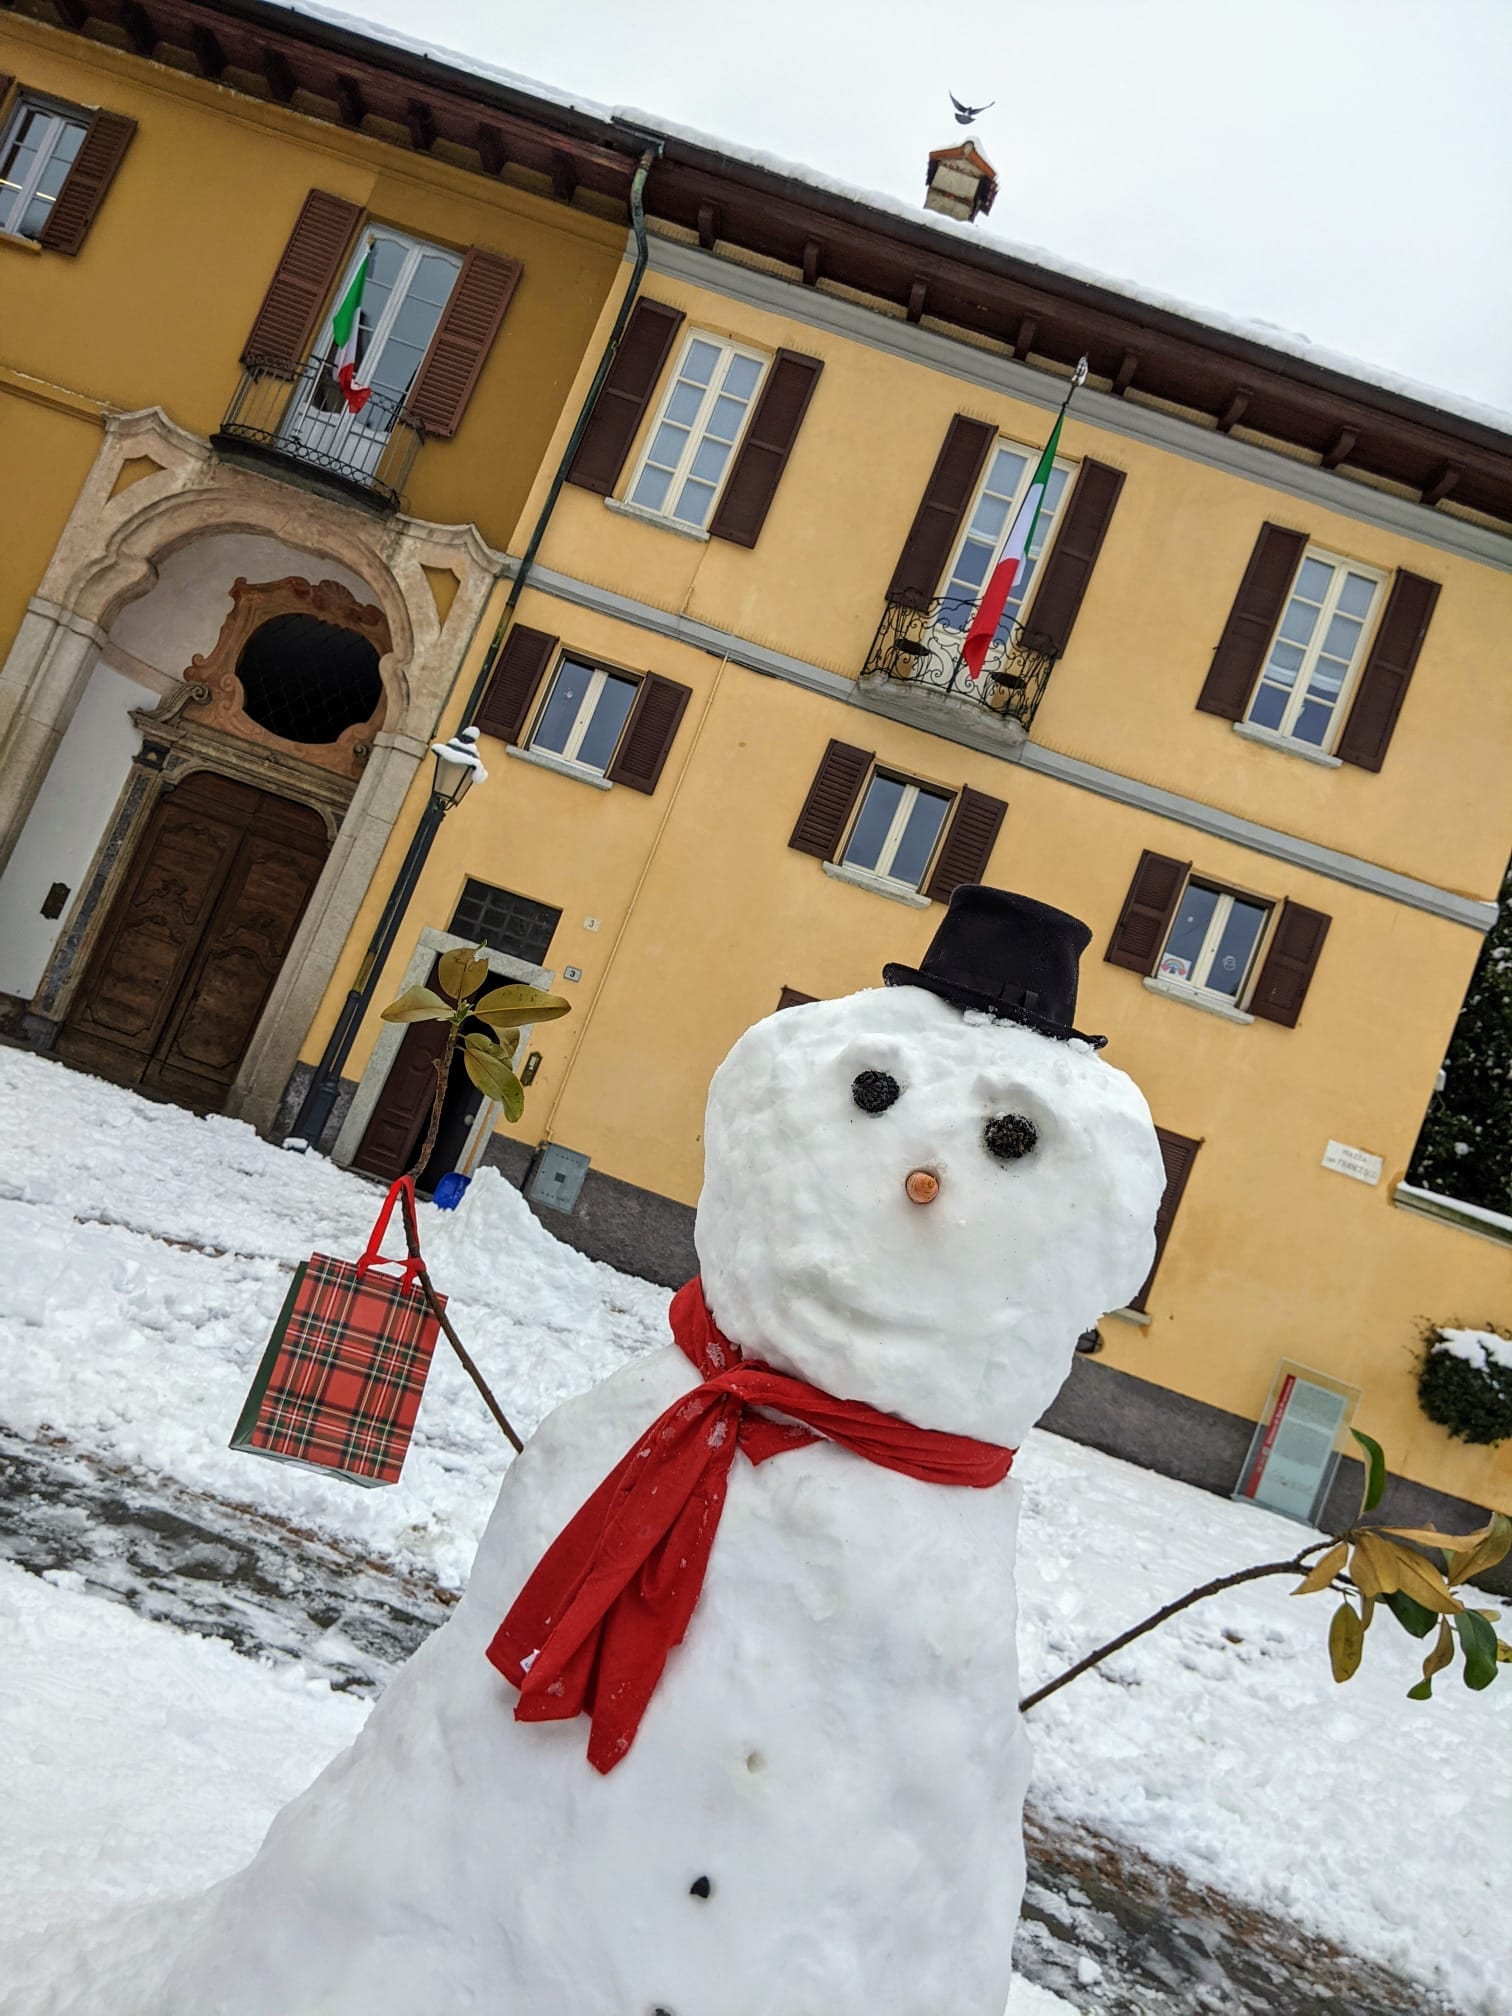 Neve, le strade di Saronno e dintorni si popolano di pupazzi di neve